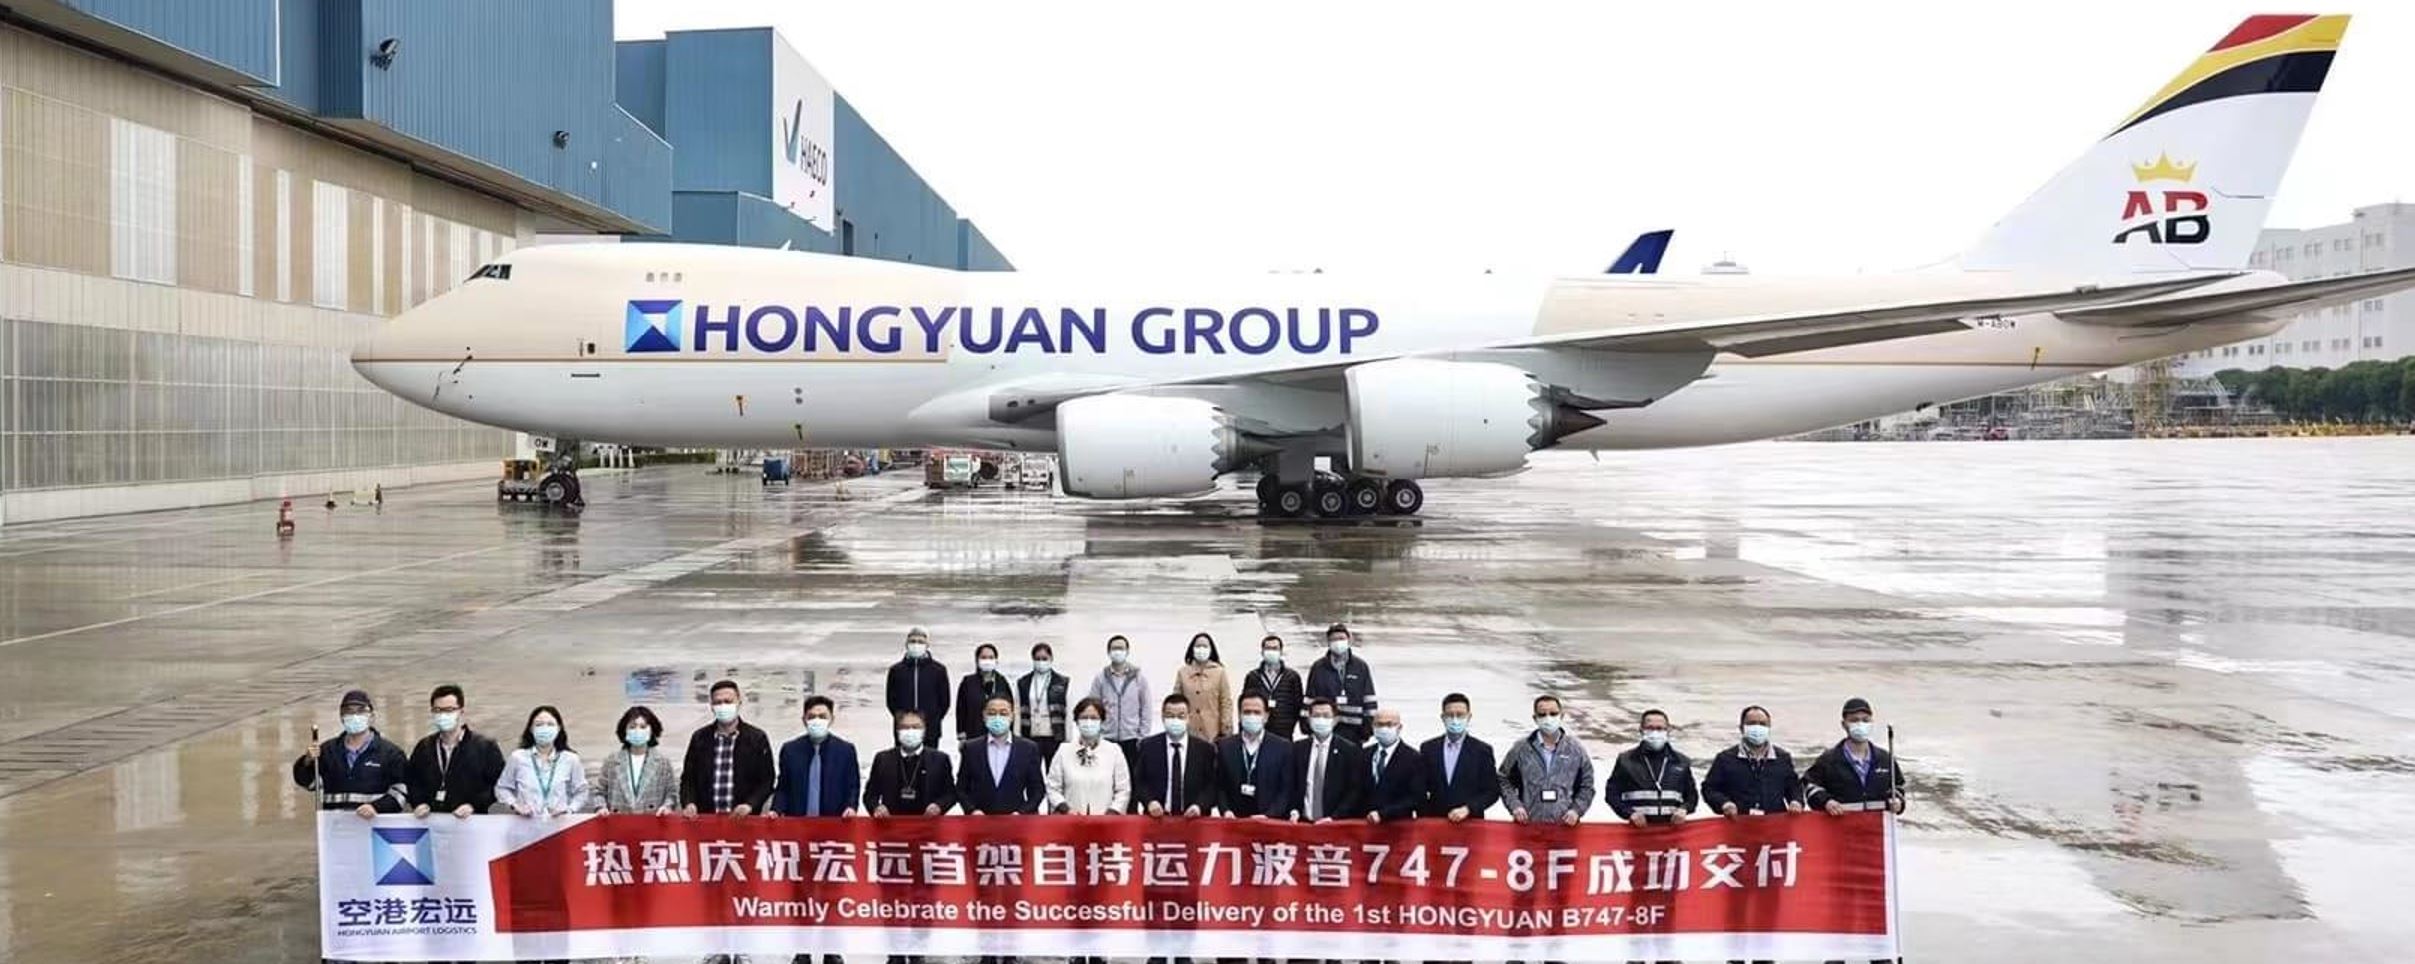 Hongyuan Group Air Belgium 20220124